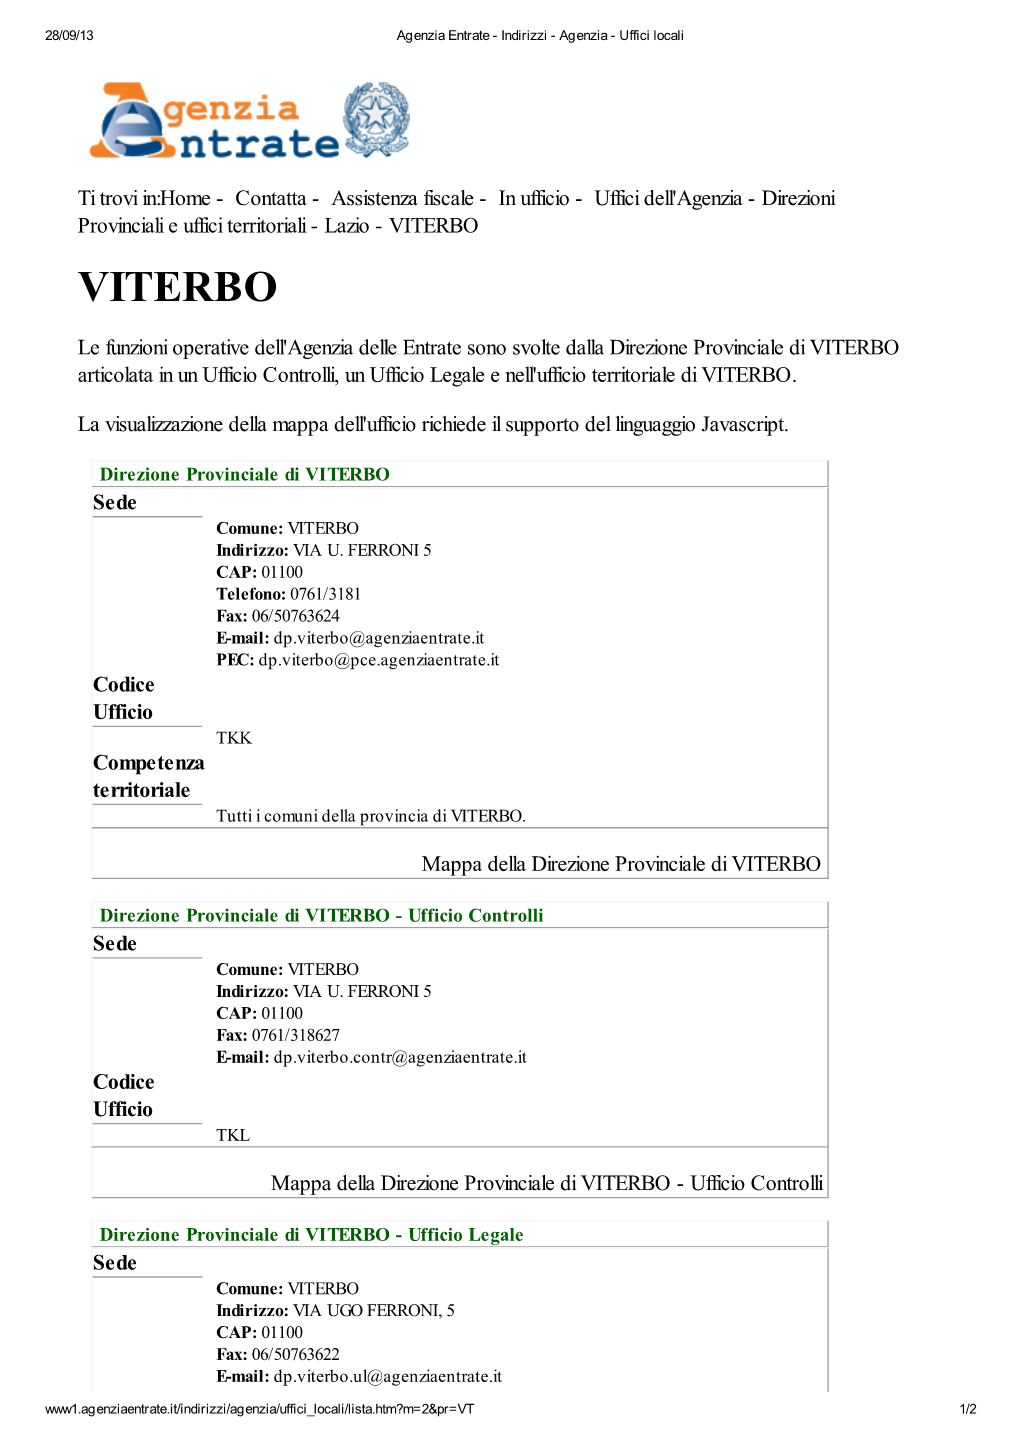 Codici Uffici Agenzia Delle Entrate Della Provincia Di Viterbo